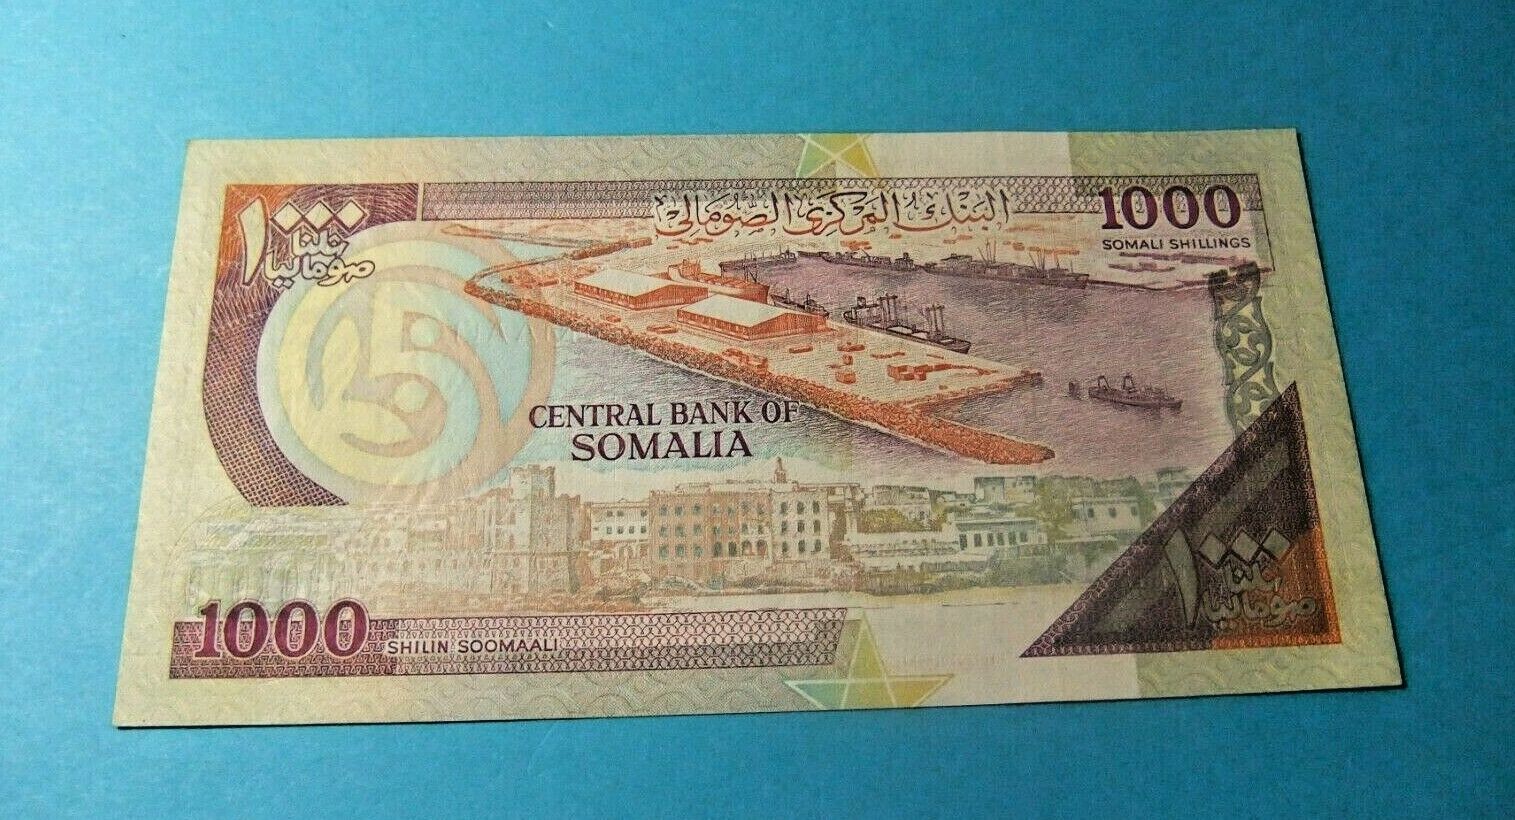 1990 Somalia 1000 Shillings Bank Note - Unc